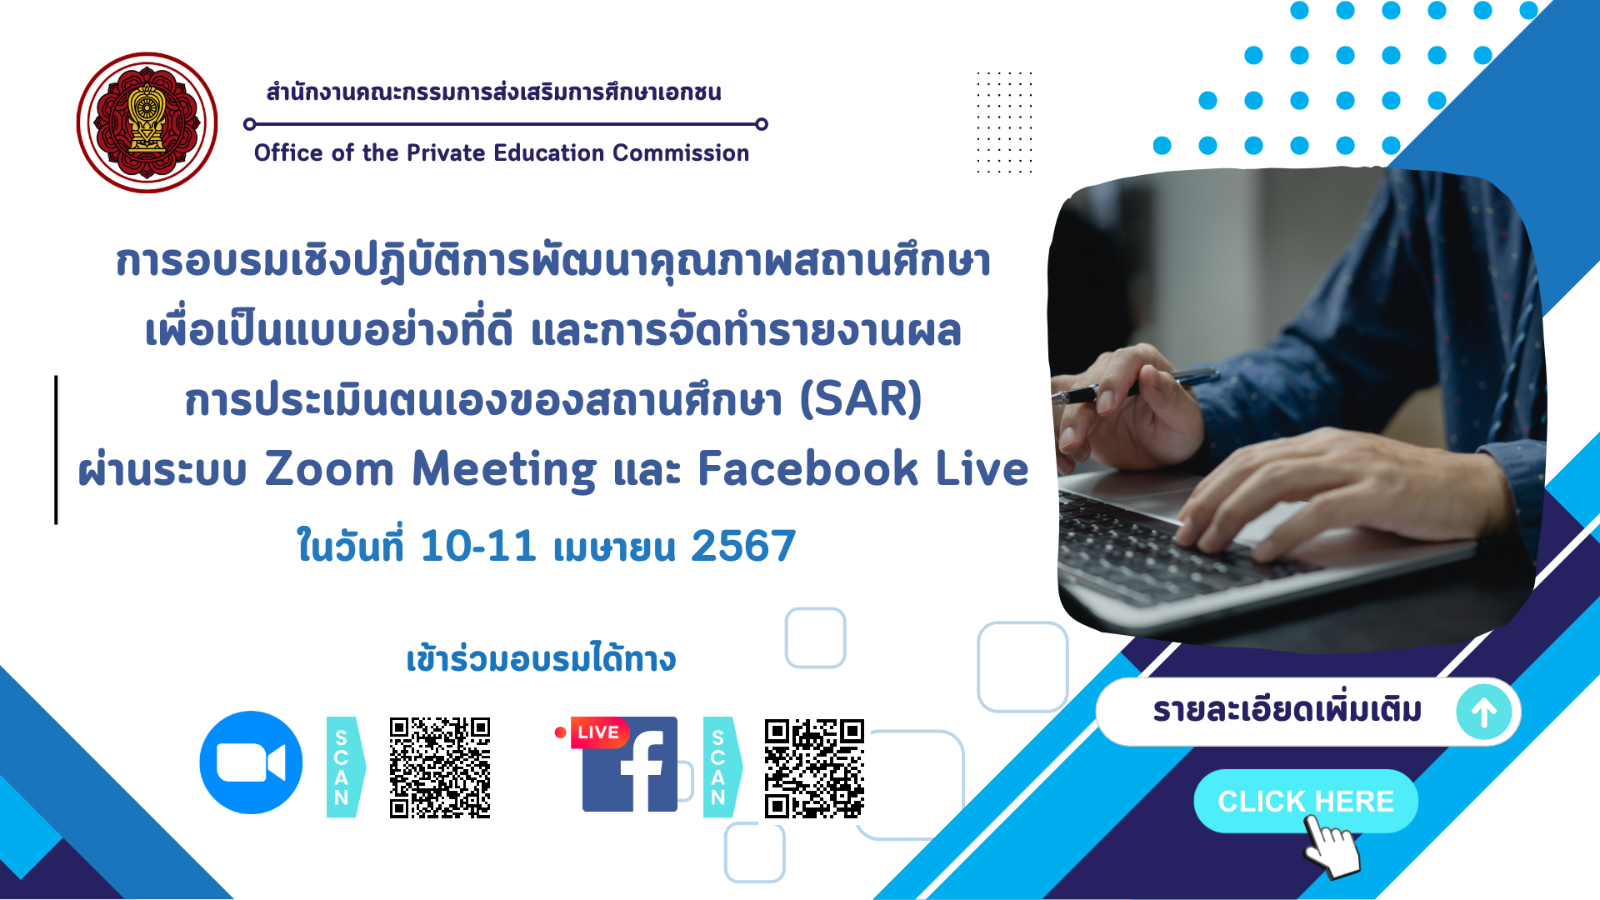 ขอเชิญเข้าร่วมการอบรมเชิงปฏิบัติการพัฒนาคุณภาพสถานศึกษาเพื่อเป็นแบบอย่างที่ดี และการจัดทำรายงานผลการประเมินตนเองของสถานศึกษา (SAR) ผ่านระบบ ZOOM Meeting และ Facebook Live